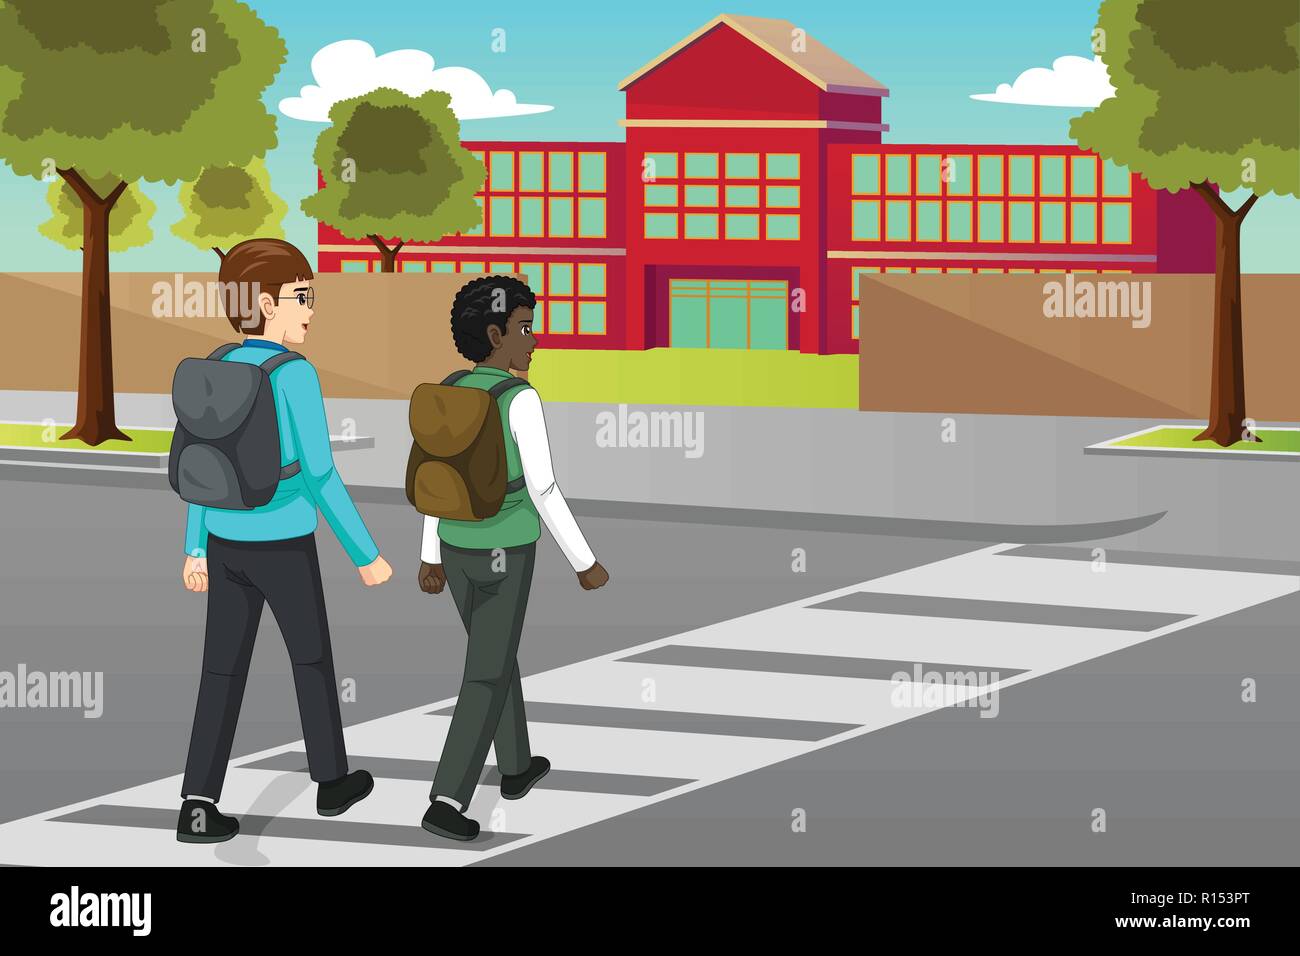 Ein Vektor Illustration der Schüler die Straße überqueren zu Schooll Stock Vektor